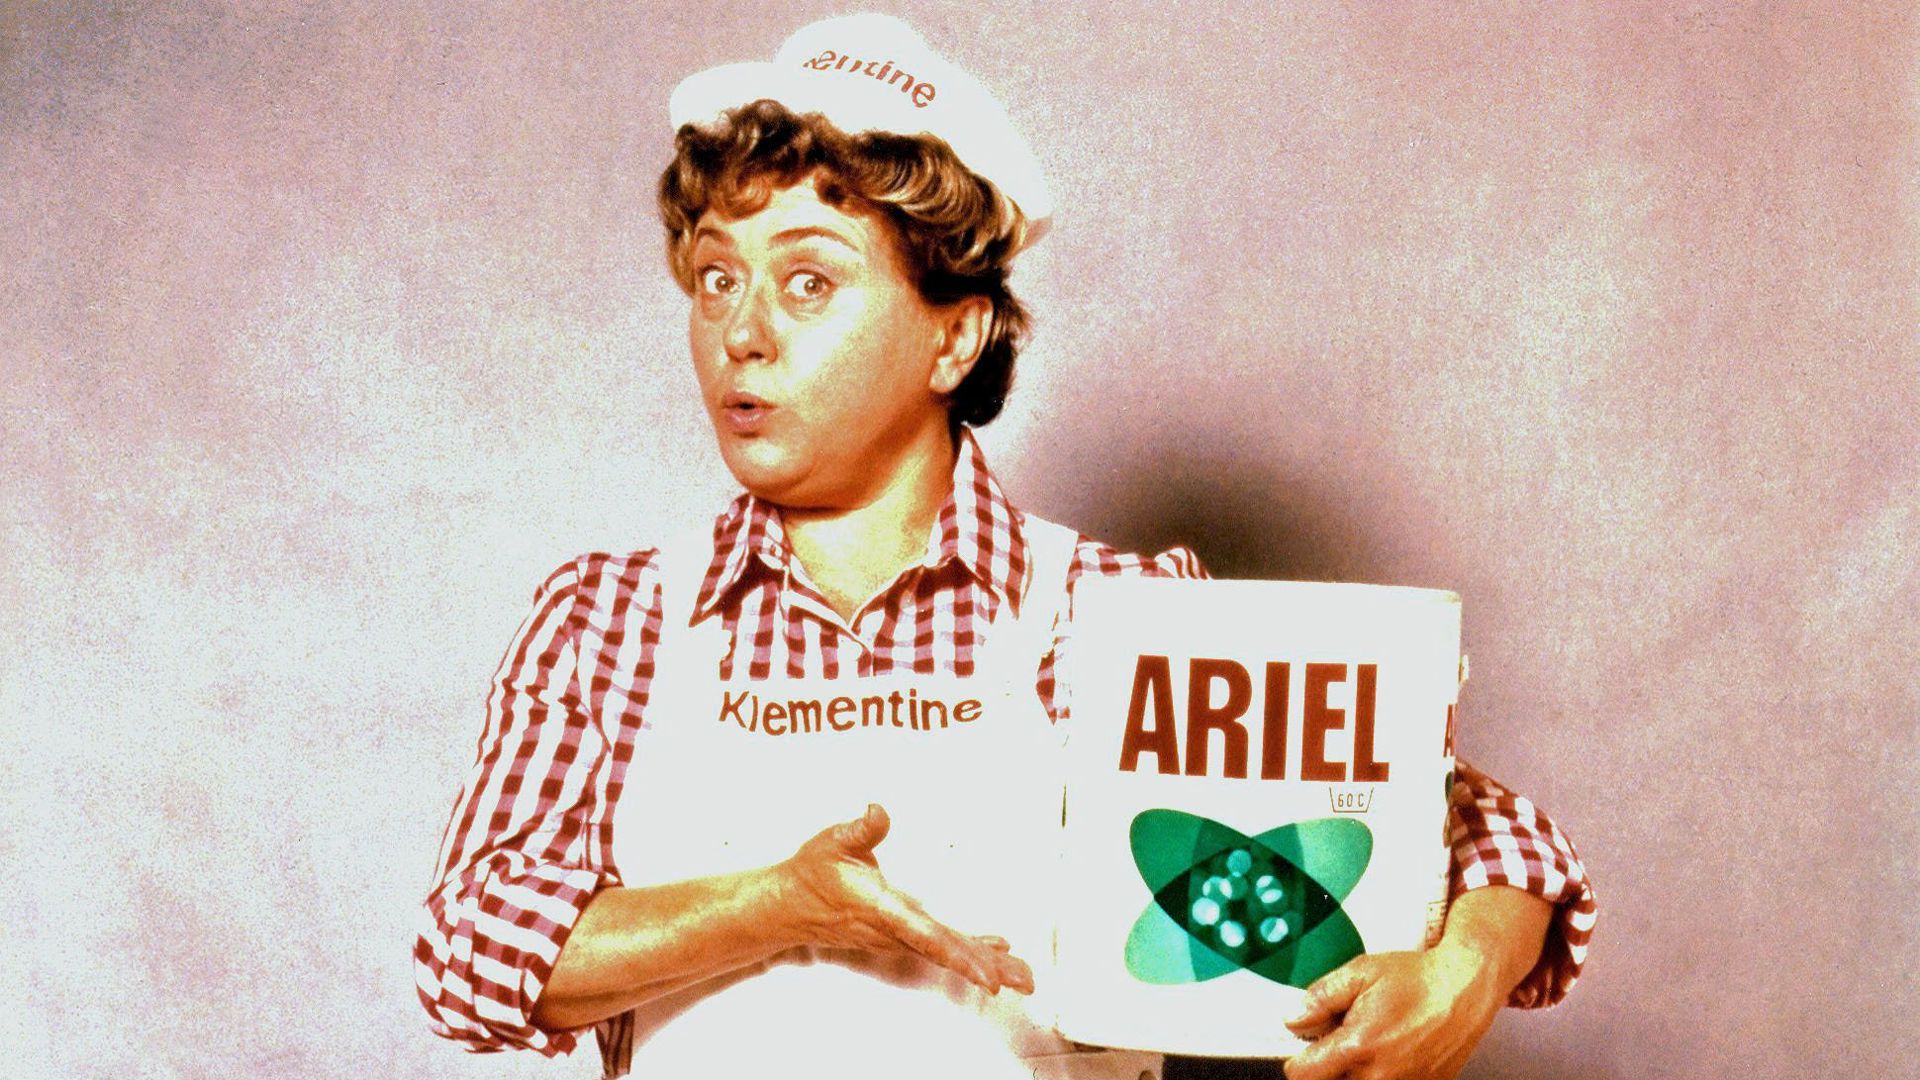 Seit 1968 wirbt die „Wasch-Expertin der Nation“ und eine der bekanntesten Werbekultfiguren Deutschlands für Ariel und damit für „Wäsche, die nicht nur sauber, sondern rein ist“. Foto: Ariel; Abdruck honorarfrei bei Quellenangabe.